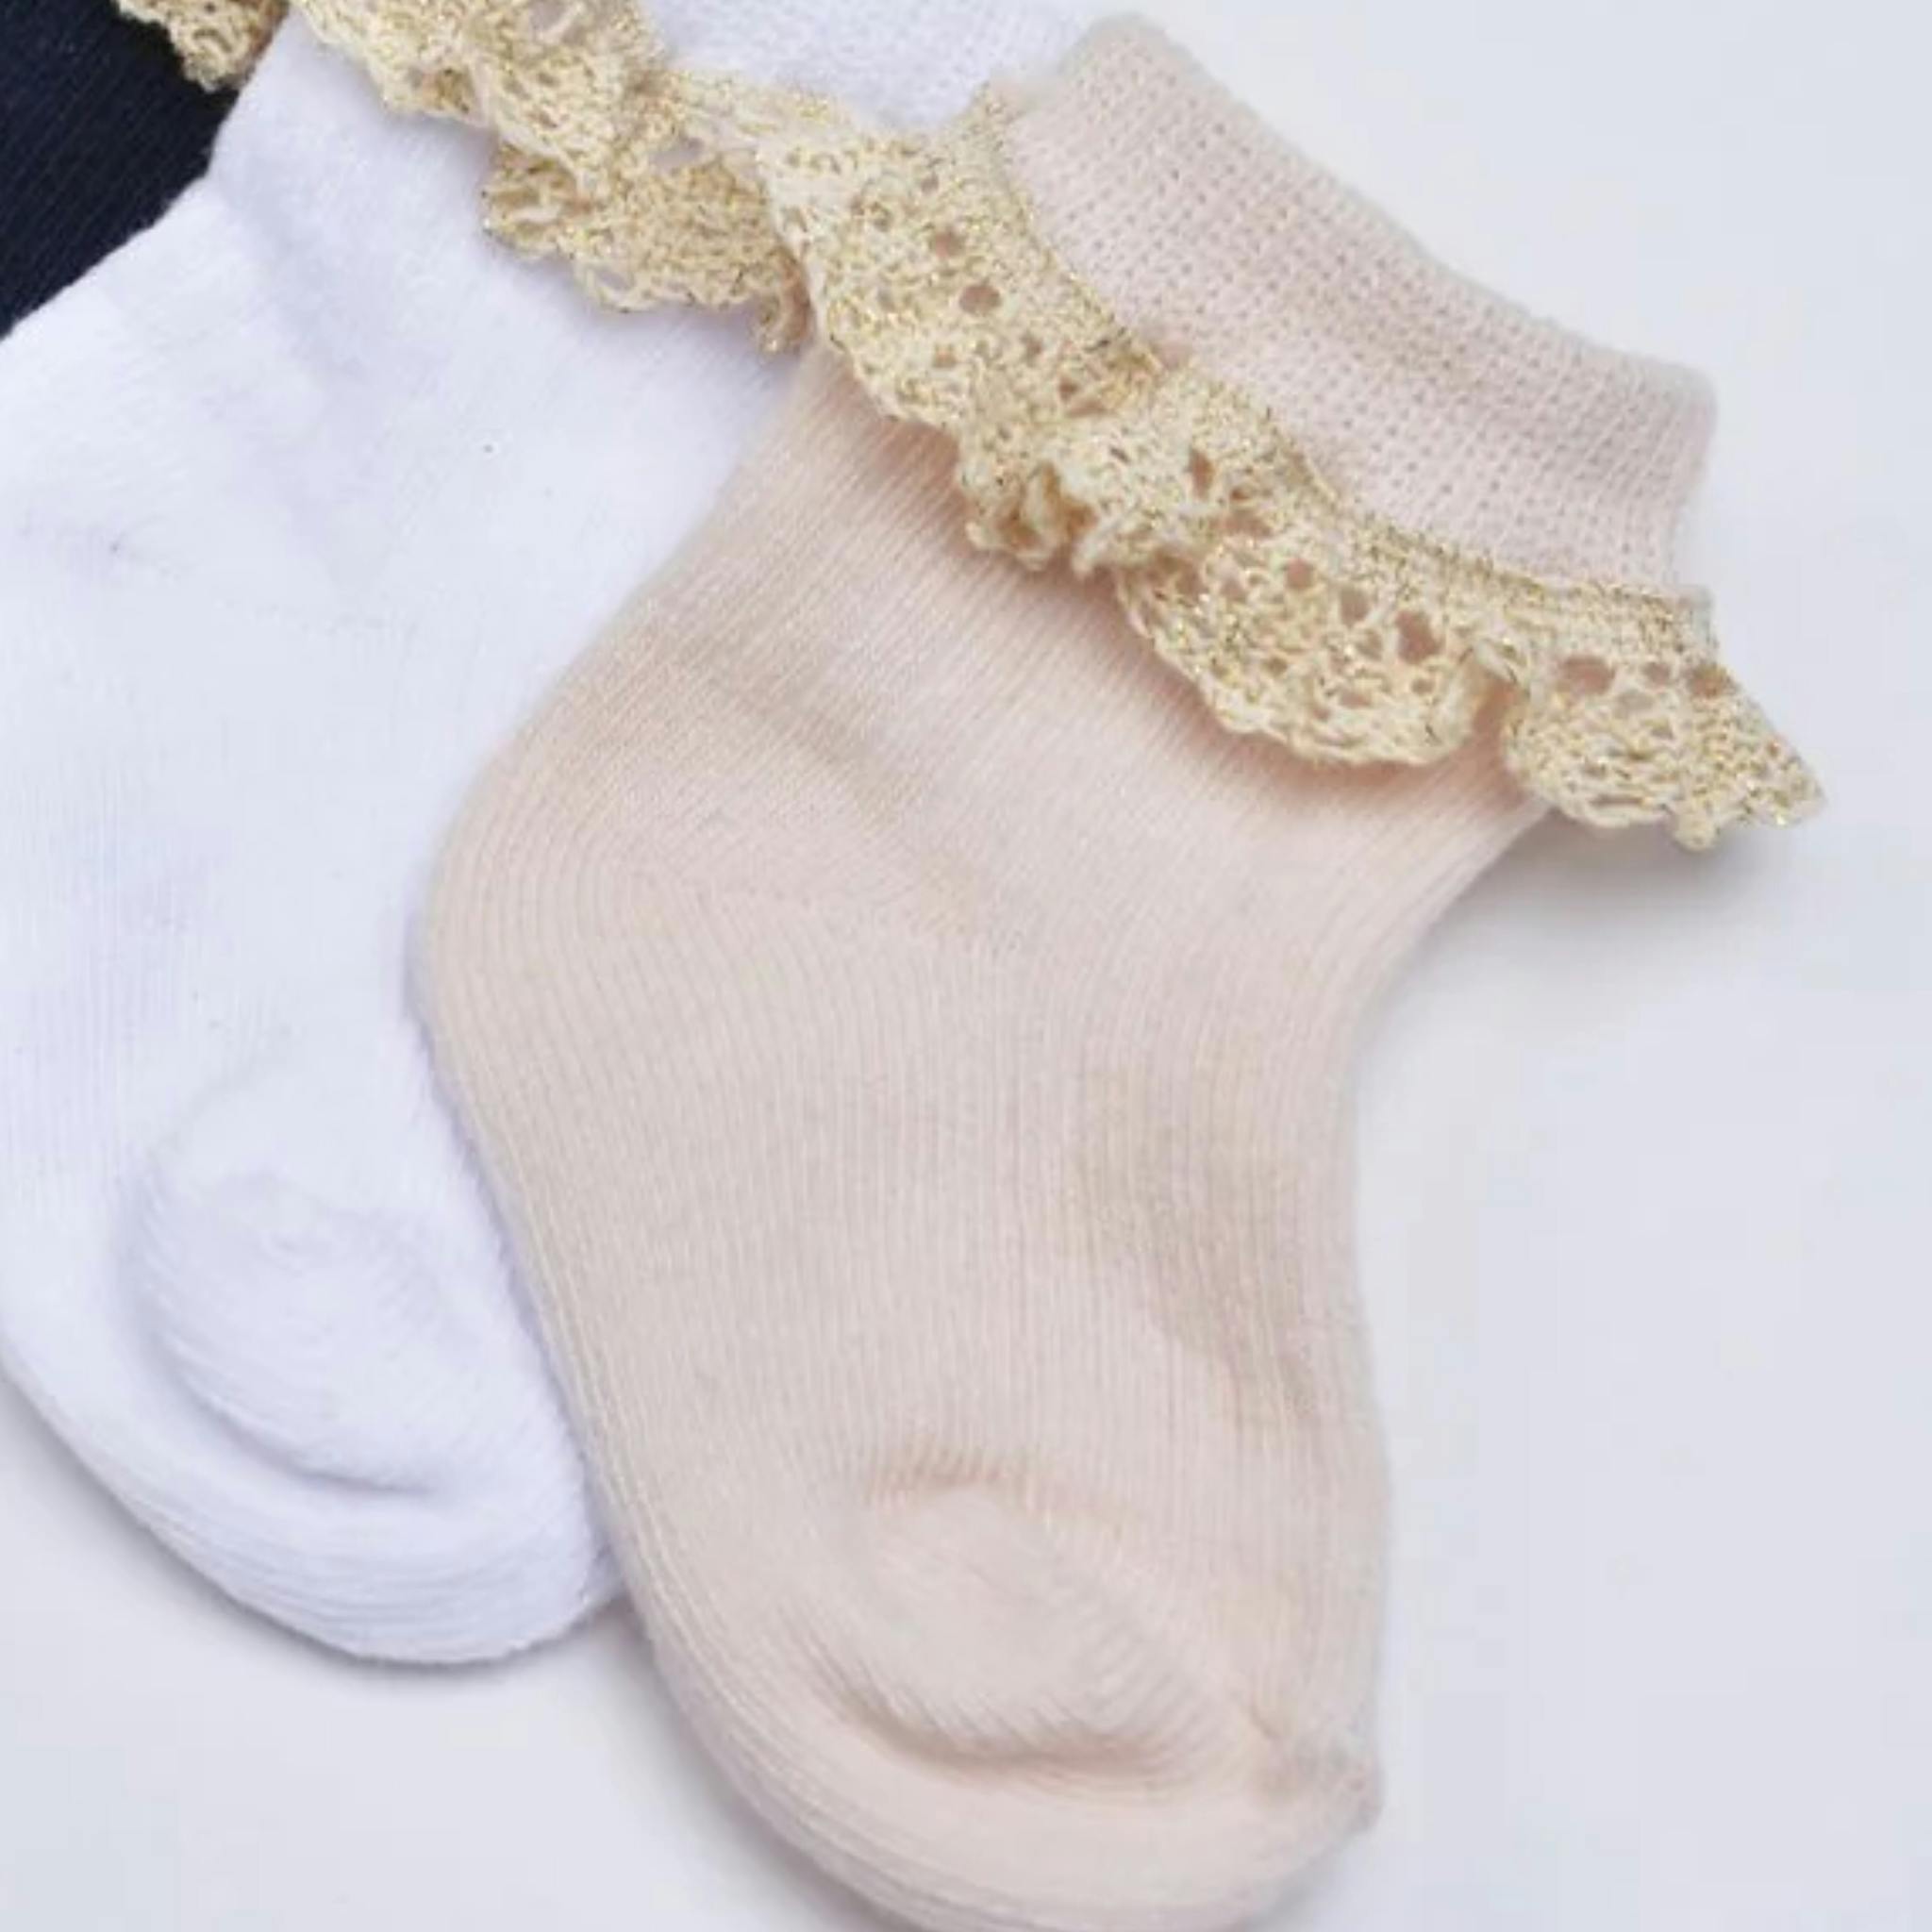 Strumpa - Lace Socks pink